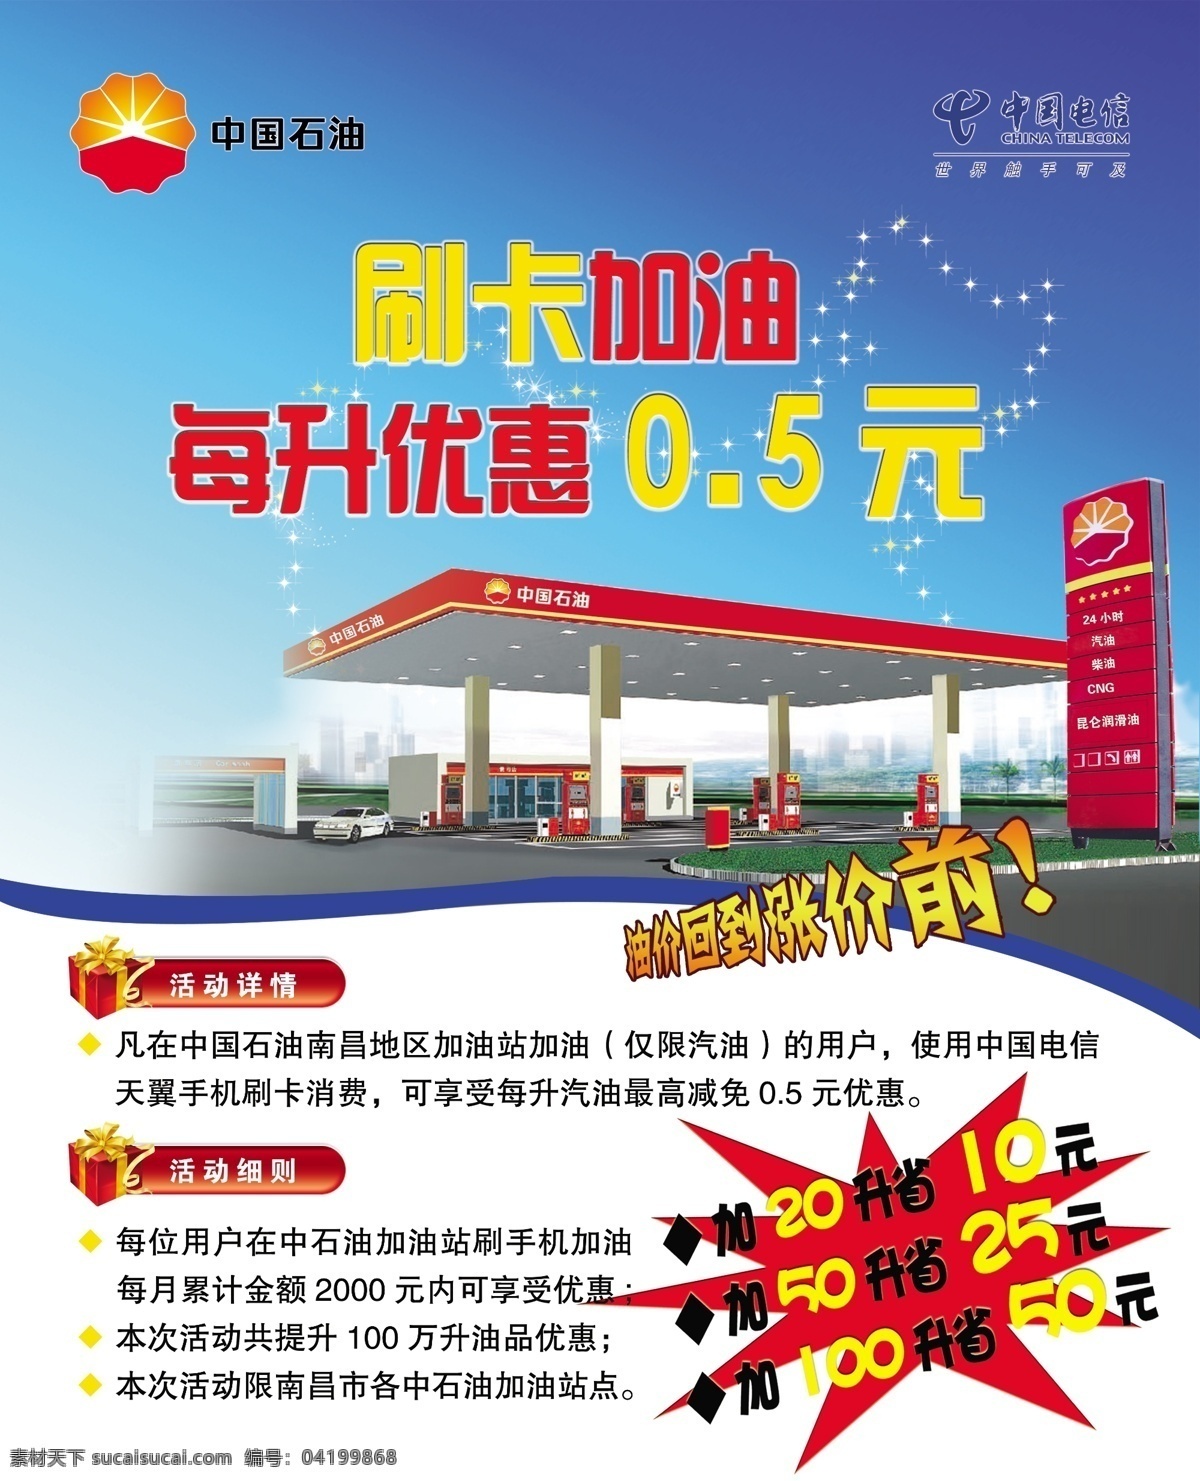 中国 石油 刷卡 加油 海报 中国石油 中国电信 石油效果图 蓝底 礼品合 广告设计模板 源文件